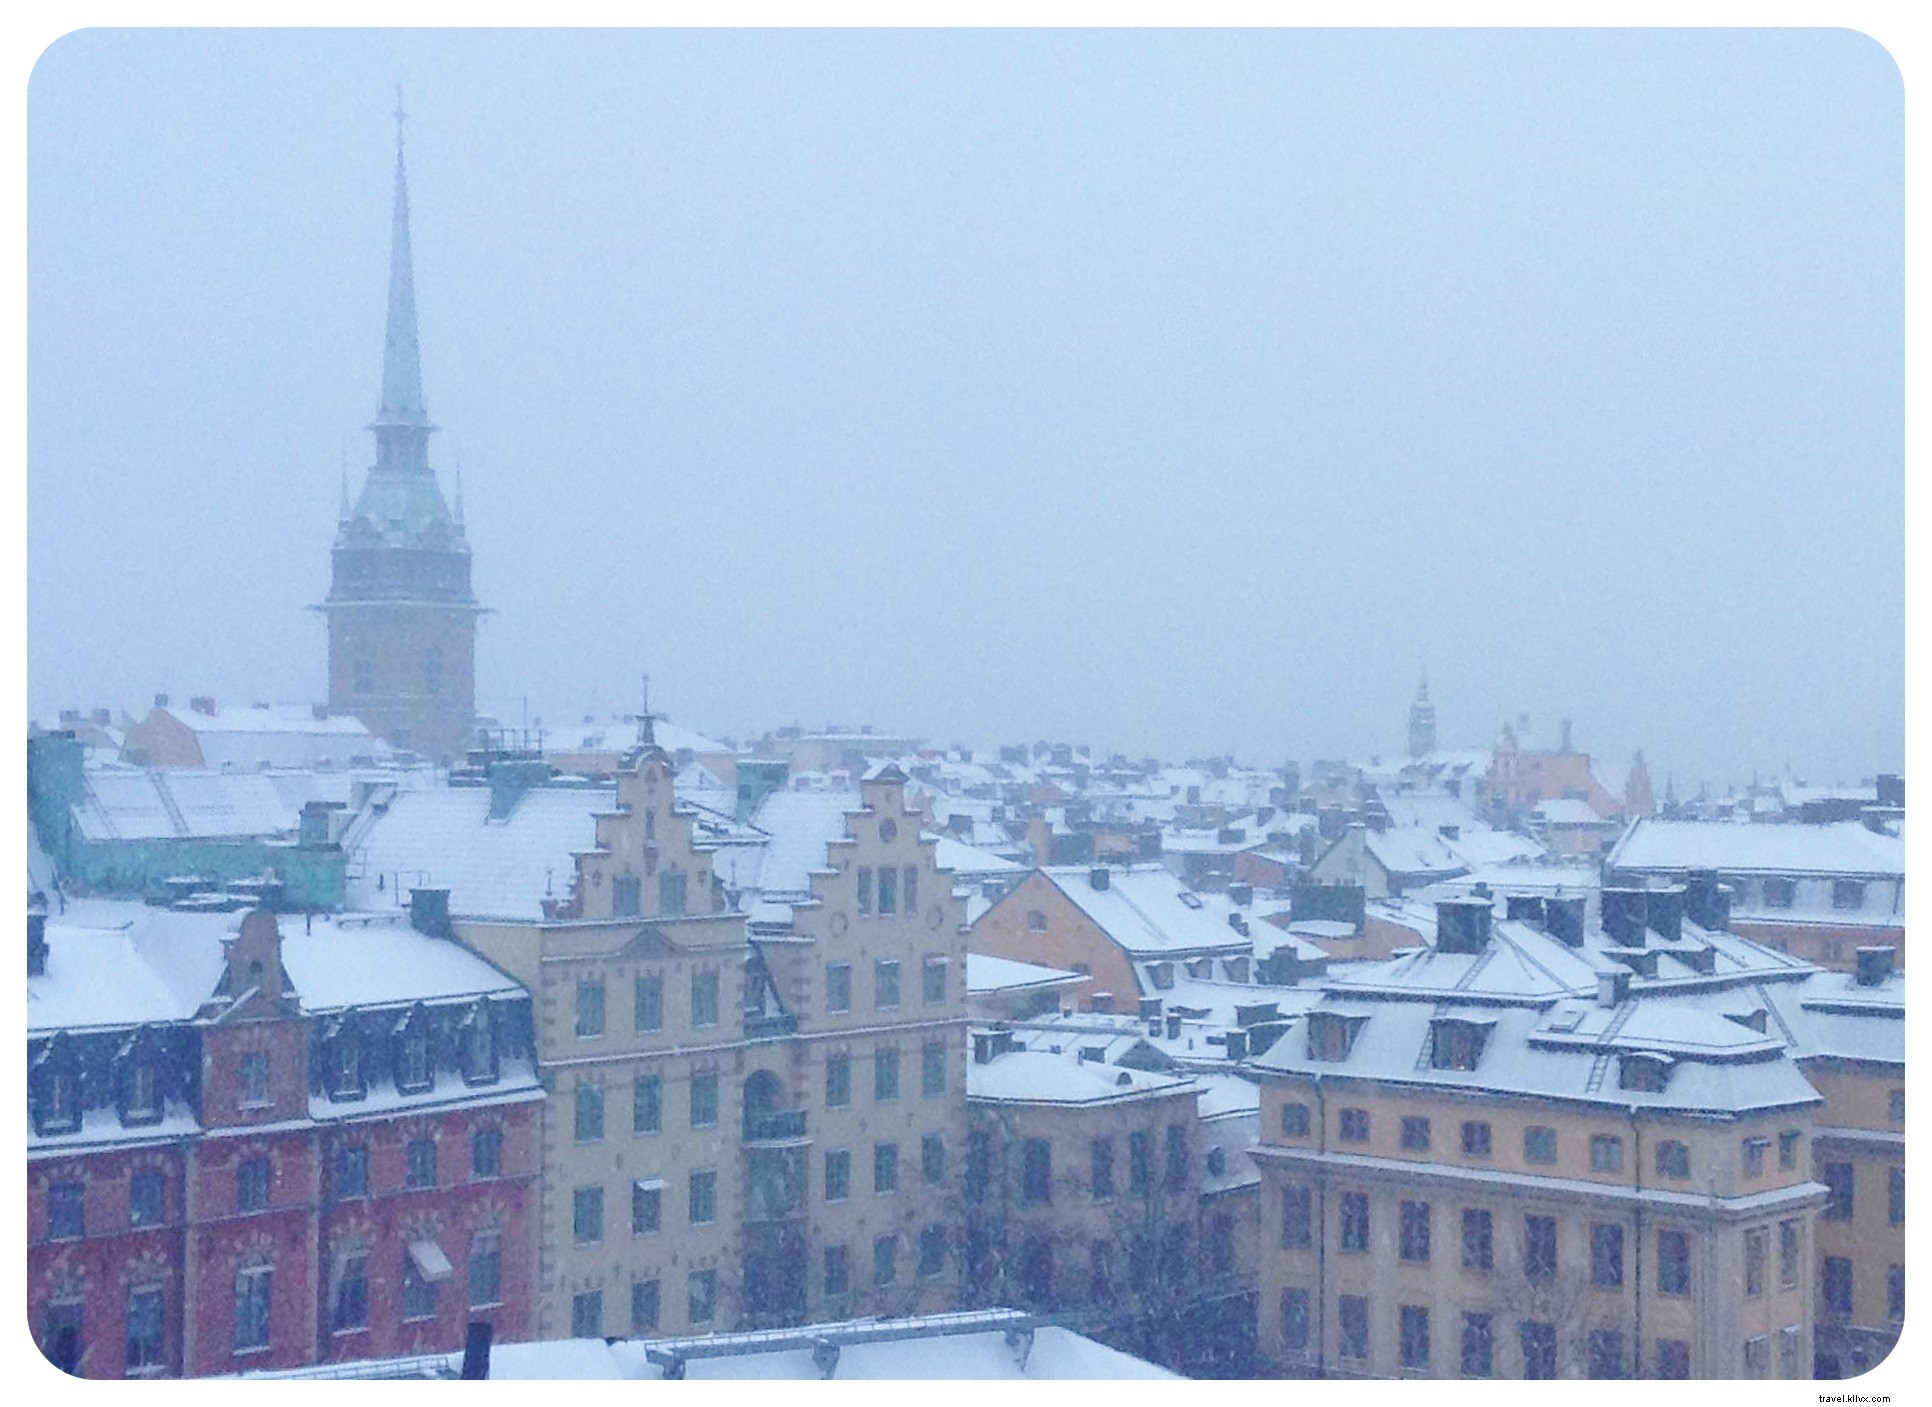 Le parfait week-end d hiver à Stockholm